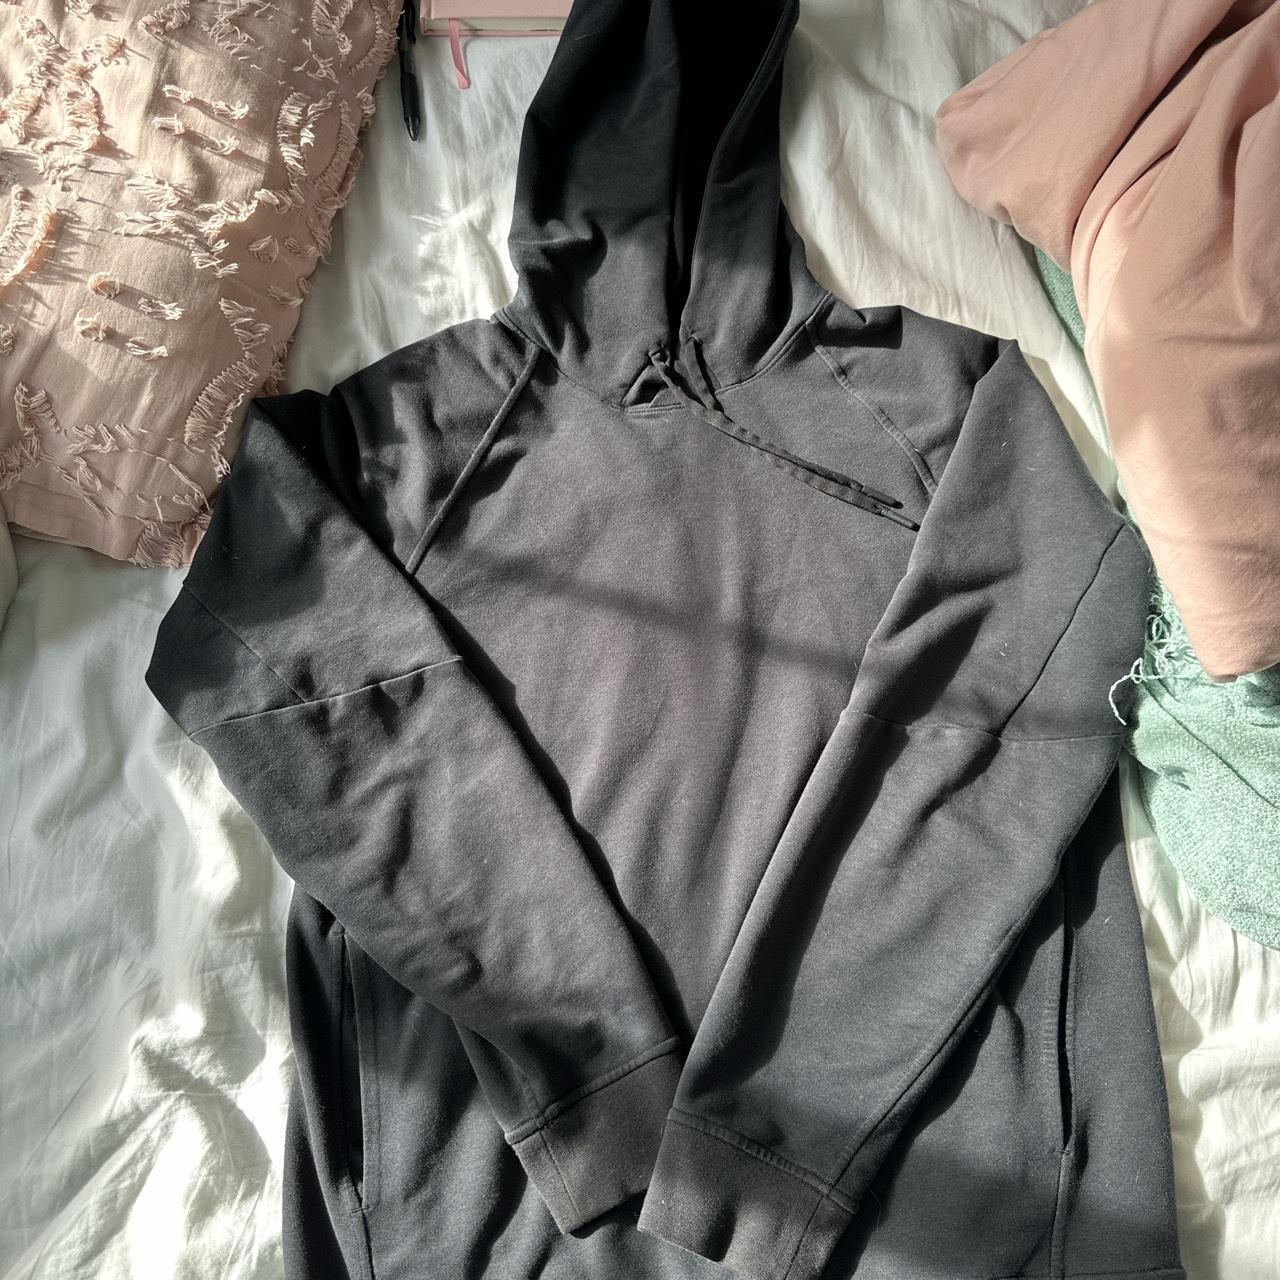 Lululemon 1/4 zip sweatshirt size 6 Excellent - Depop